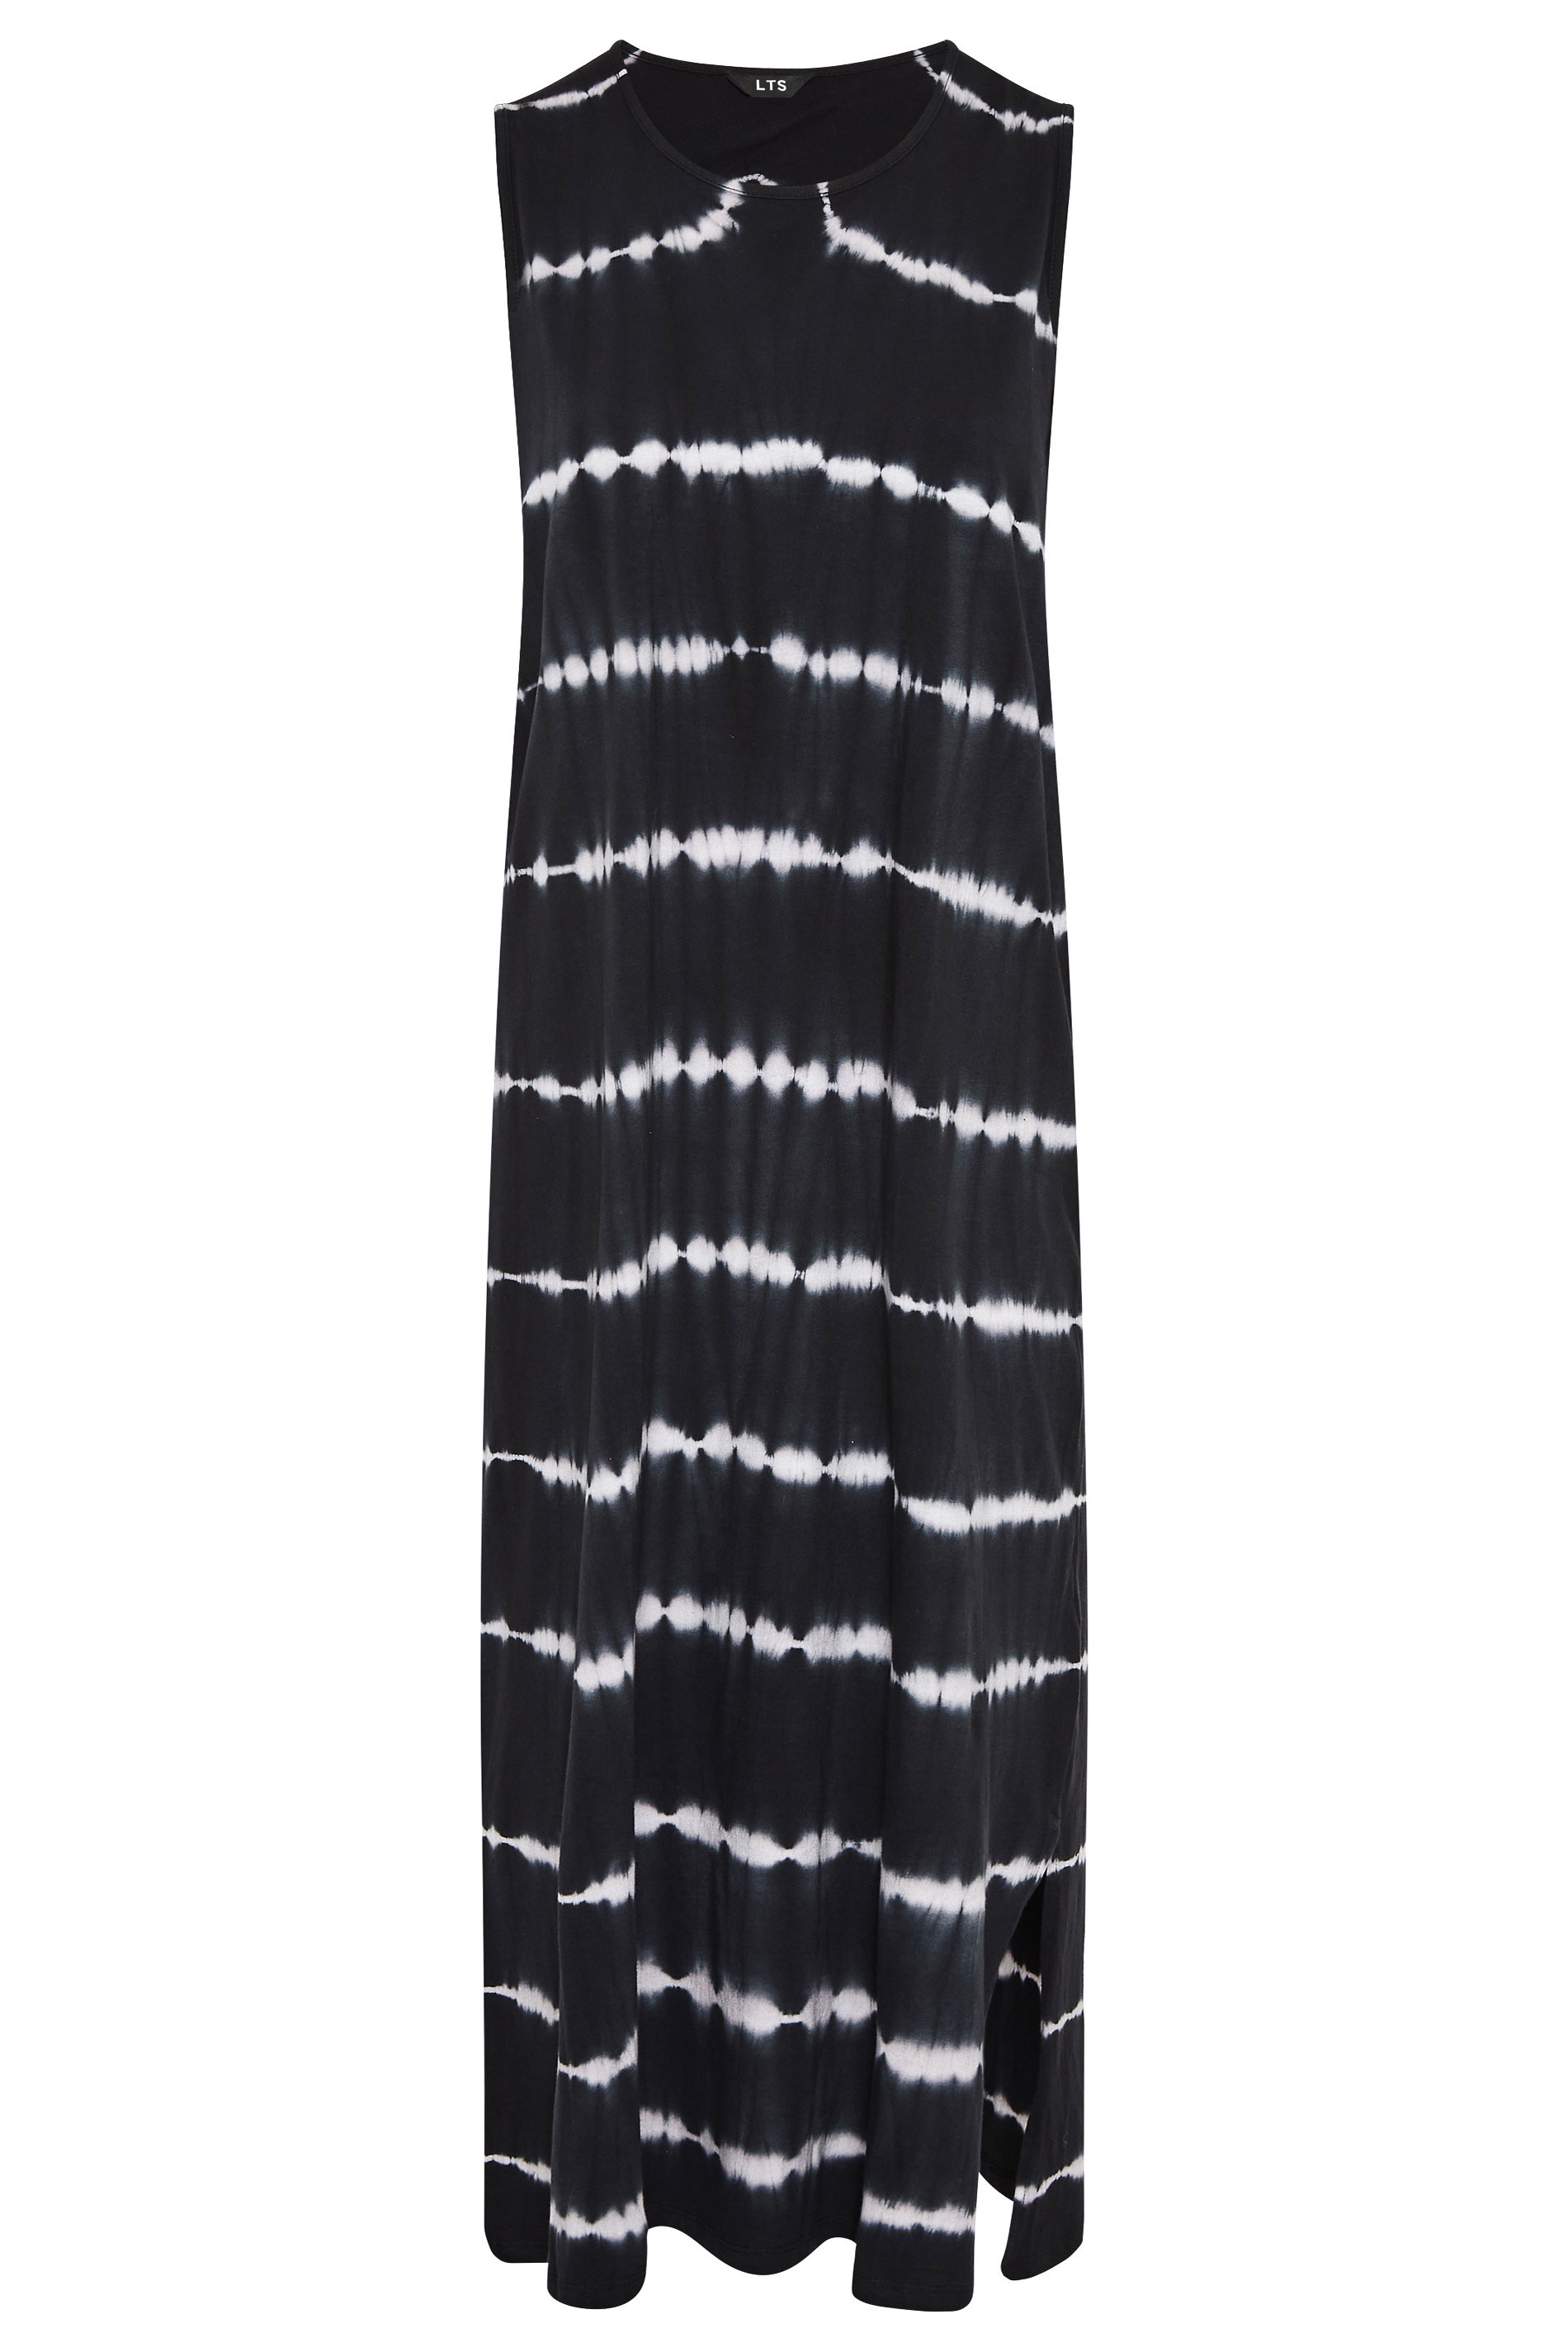 Black Tie Dye Side Splits Maxi Dress ...